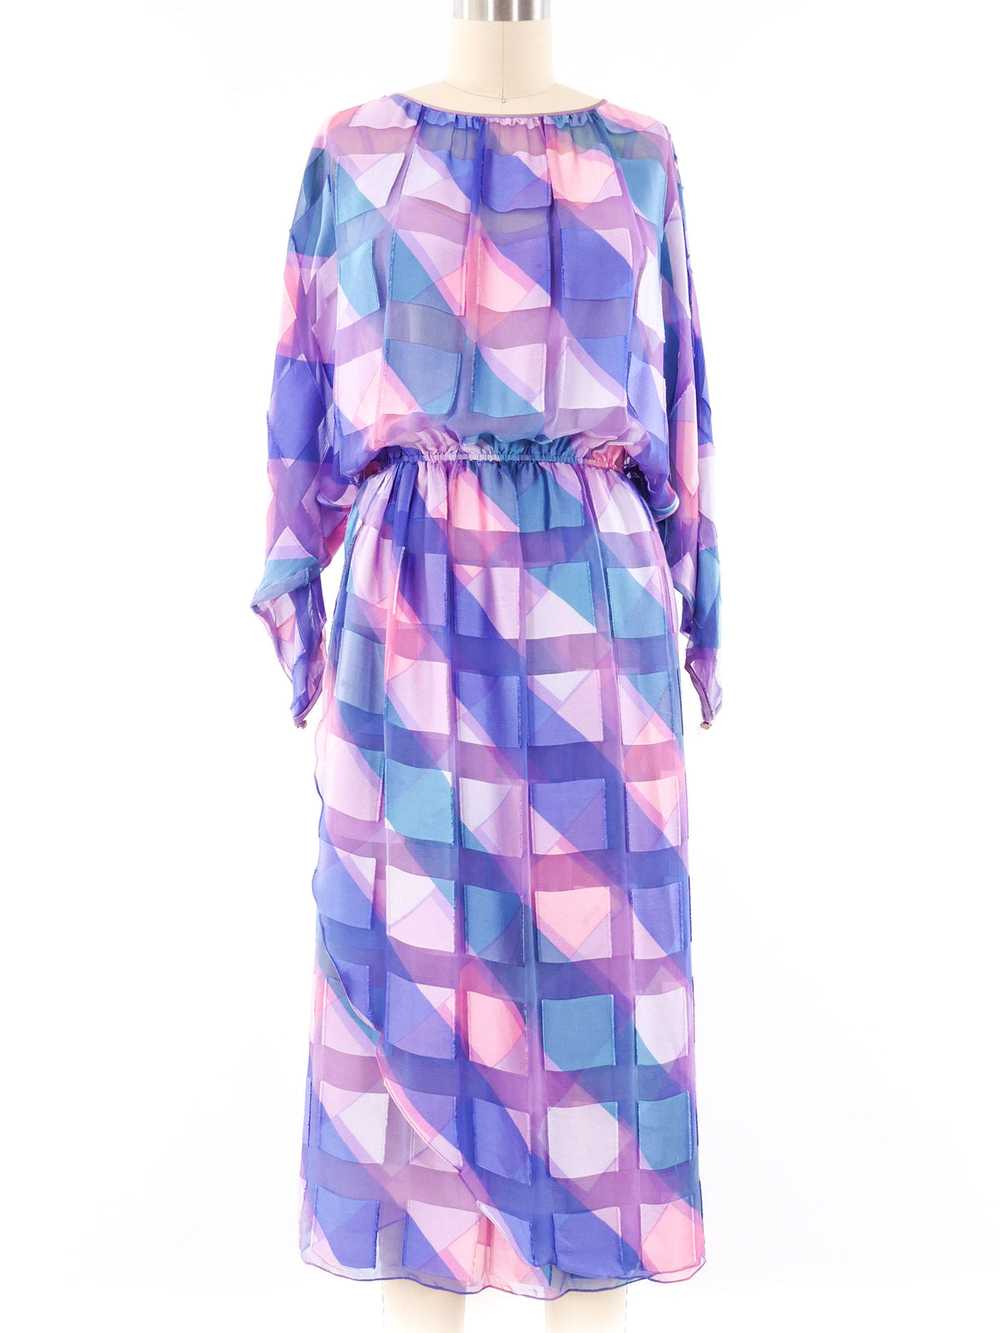 Pastel Striped Jacquard Silk Chiffon Dress - image 1